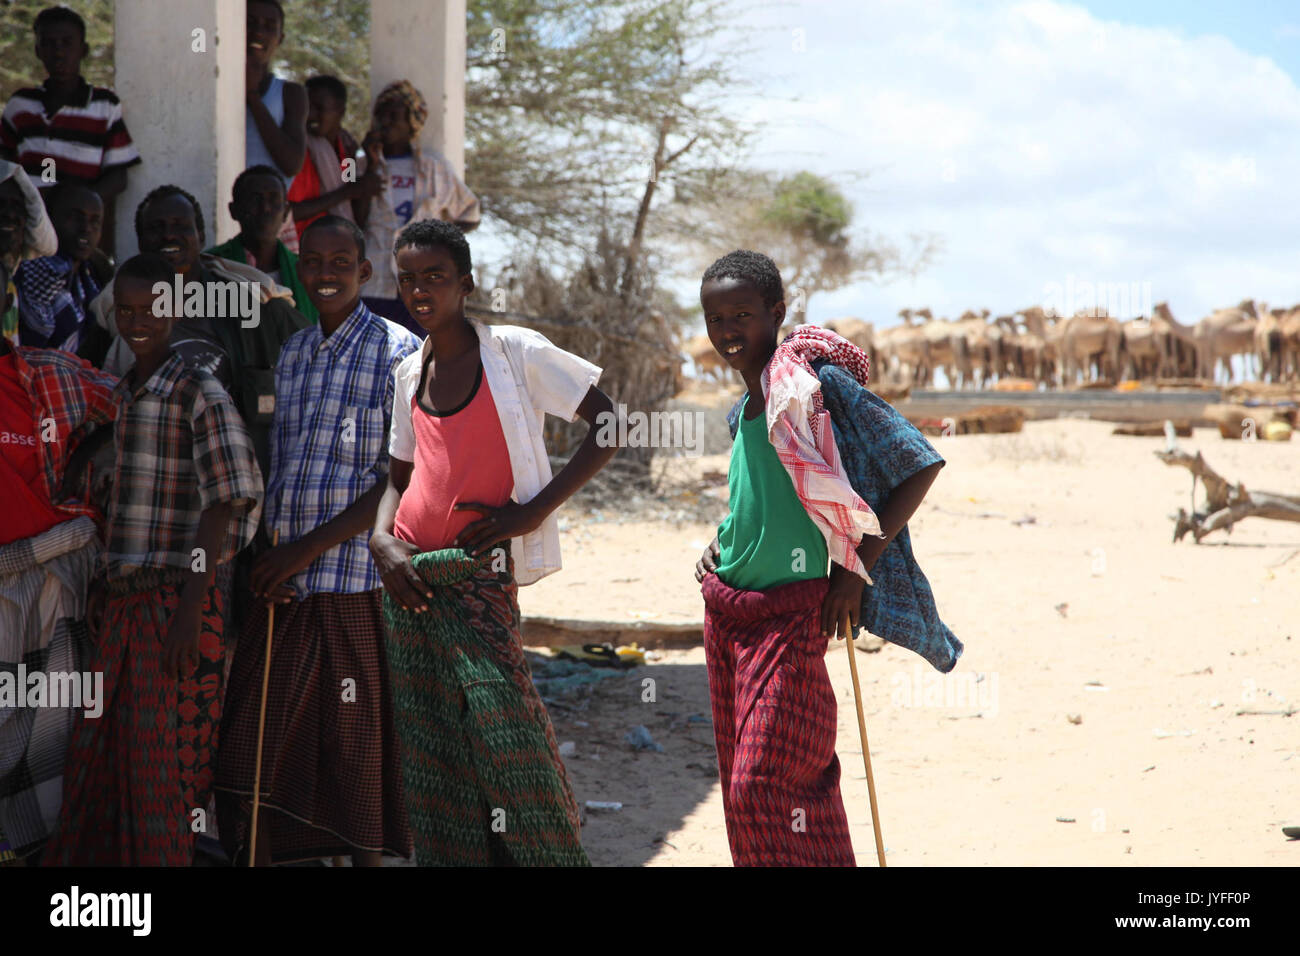 Un groupe de jeunes hommes se tenir devant des chameaux dans la ville d'Adale, en Somalie. Des soldats burundais, dans le cadre de la Mission de l'Union africaine en Somalie, hier, ont libéré la ville d'Adale au milieu (15431624921) Banque D'Images